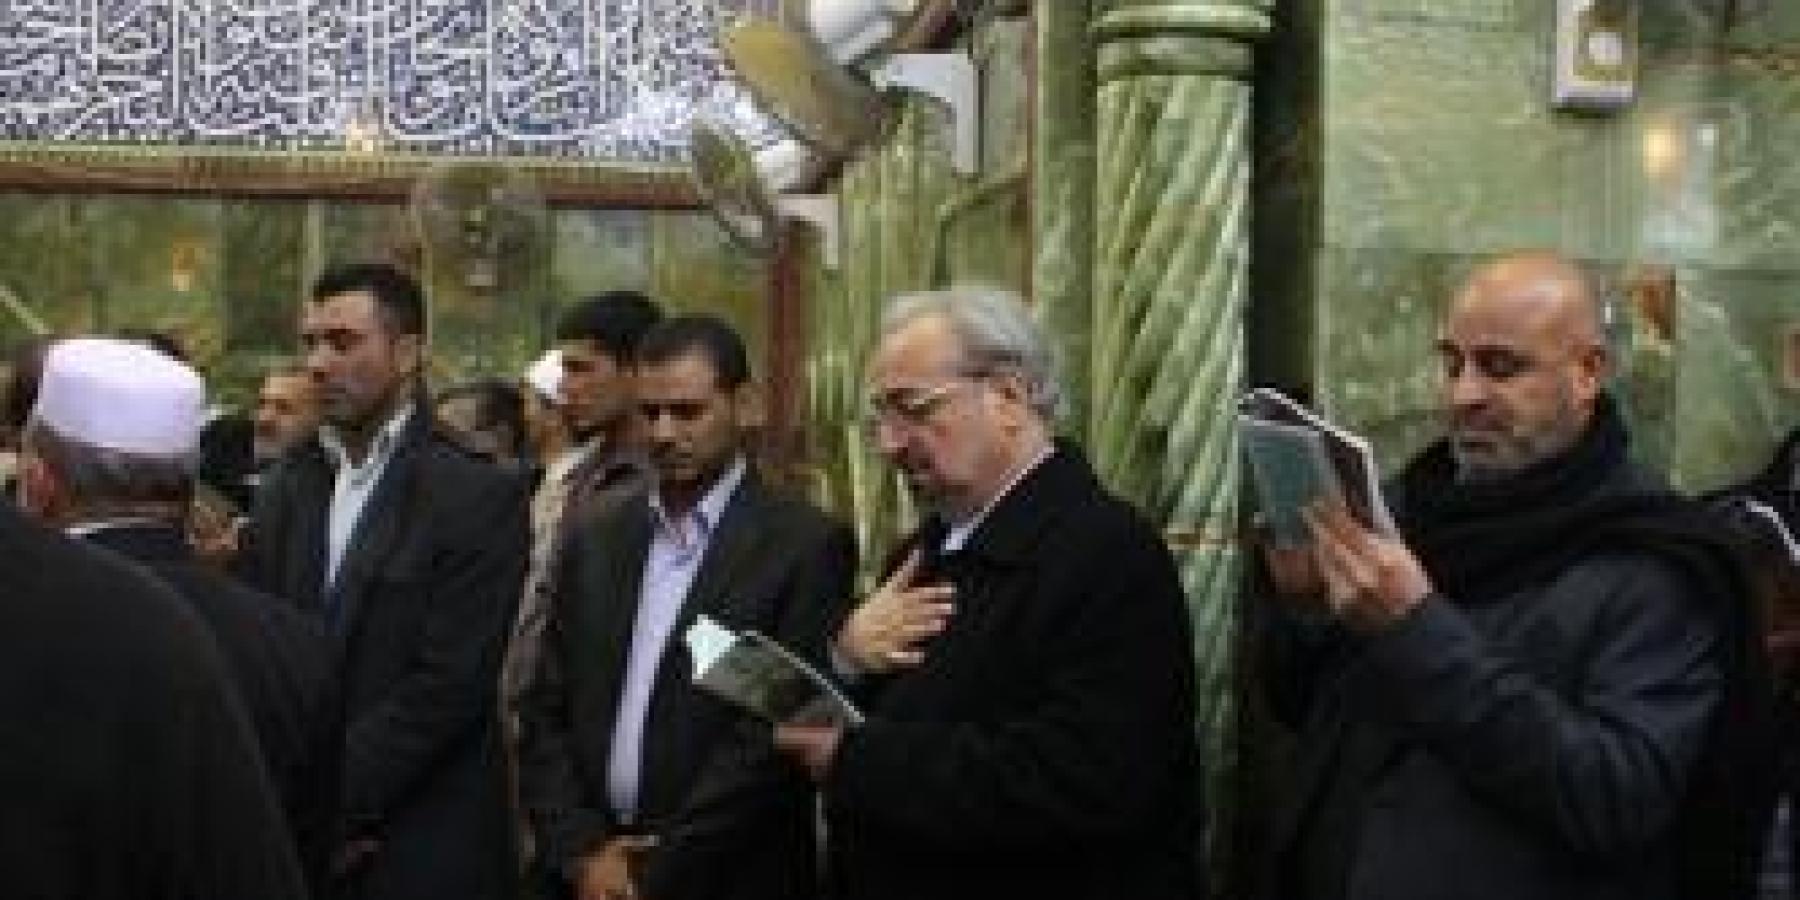 القنصل الإيراني في النجف الأشرف يتشرَّف بزيارة مرقد الإمام أمير المؤمنين عَلِيٍّ عليه السلام